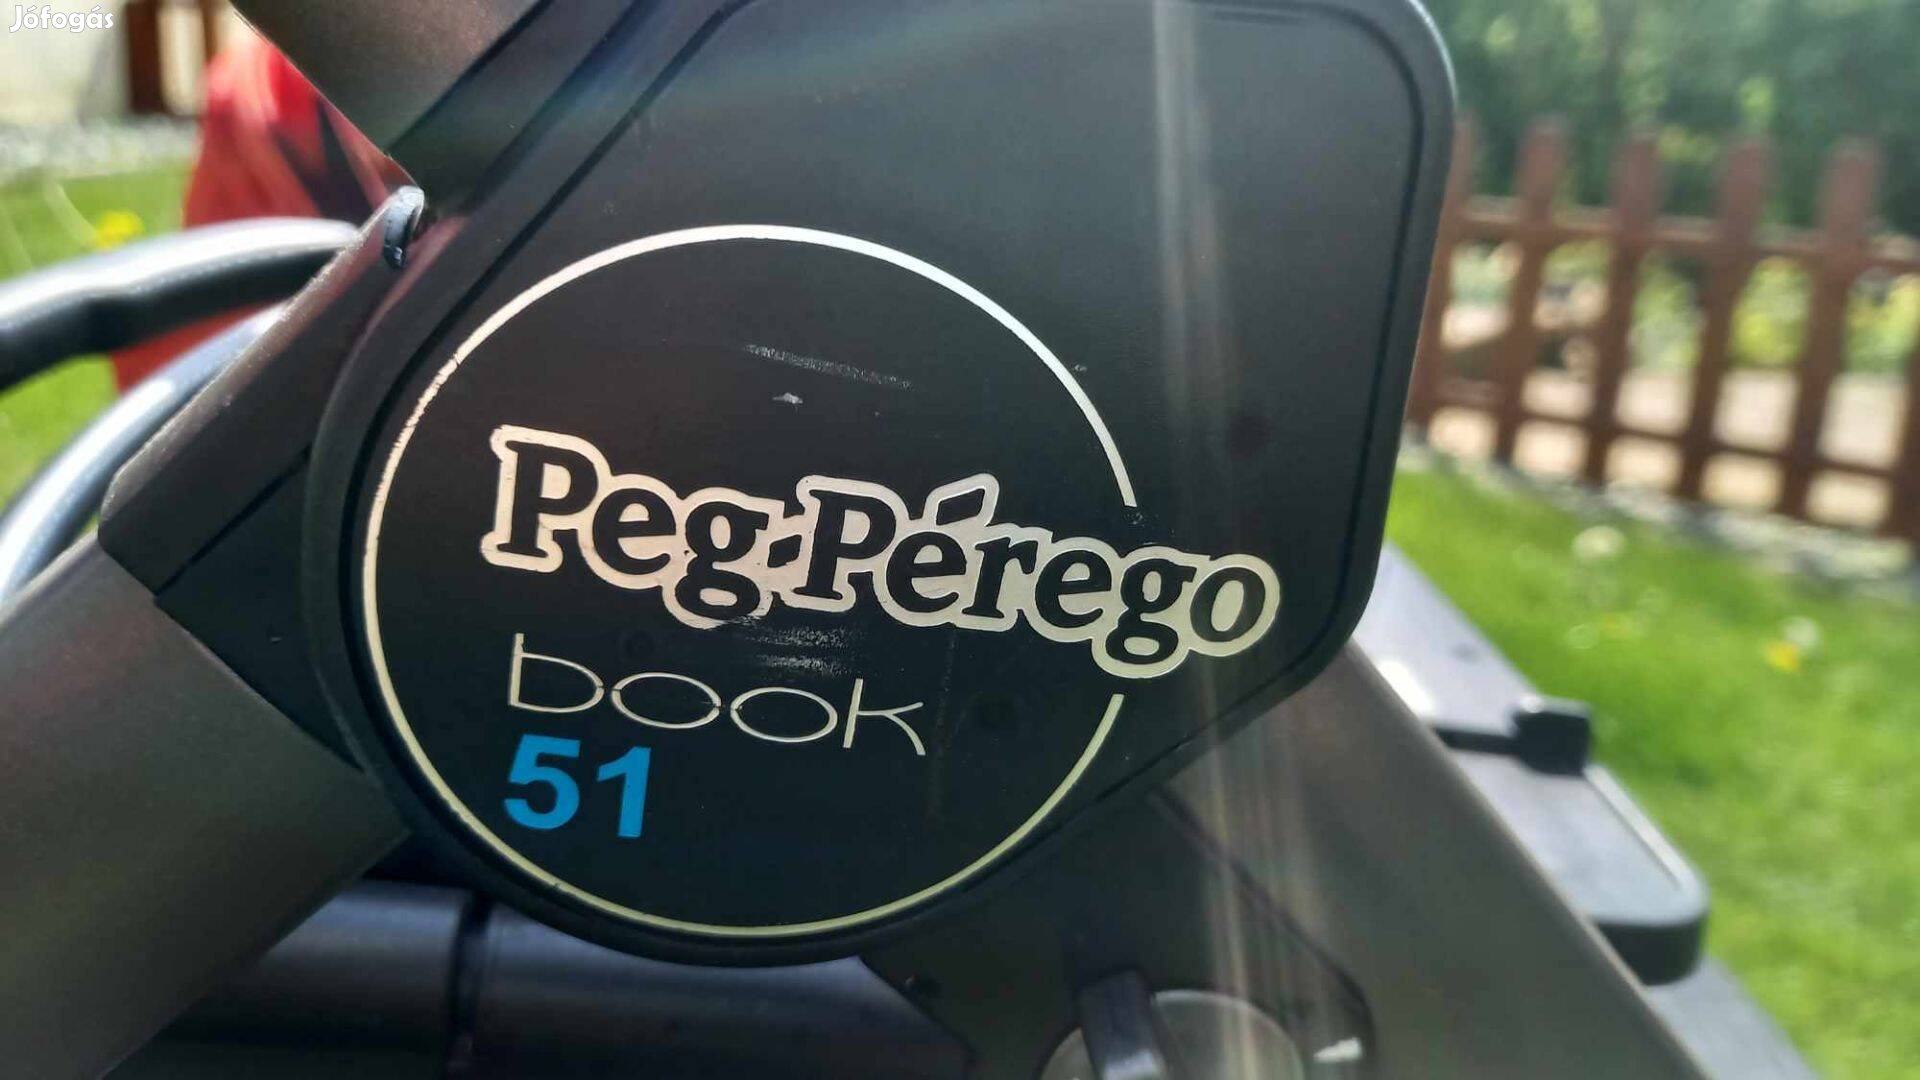 Peg-Pérego book51 babakocsi eladó